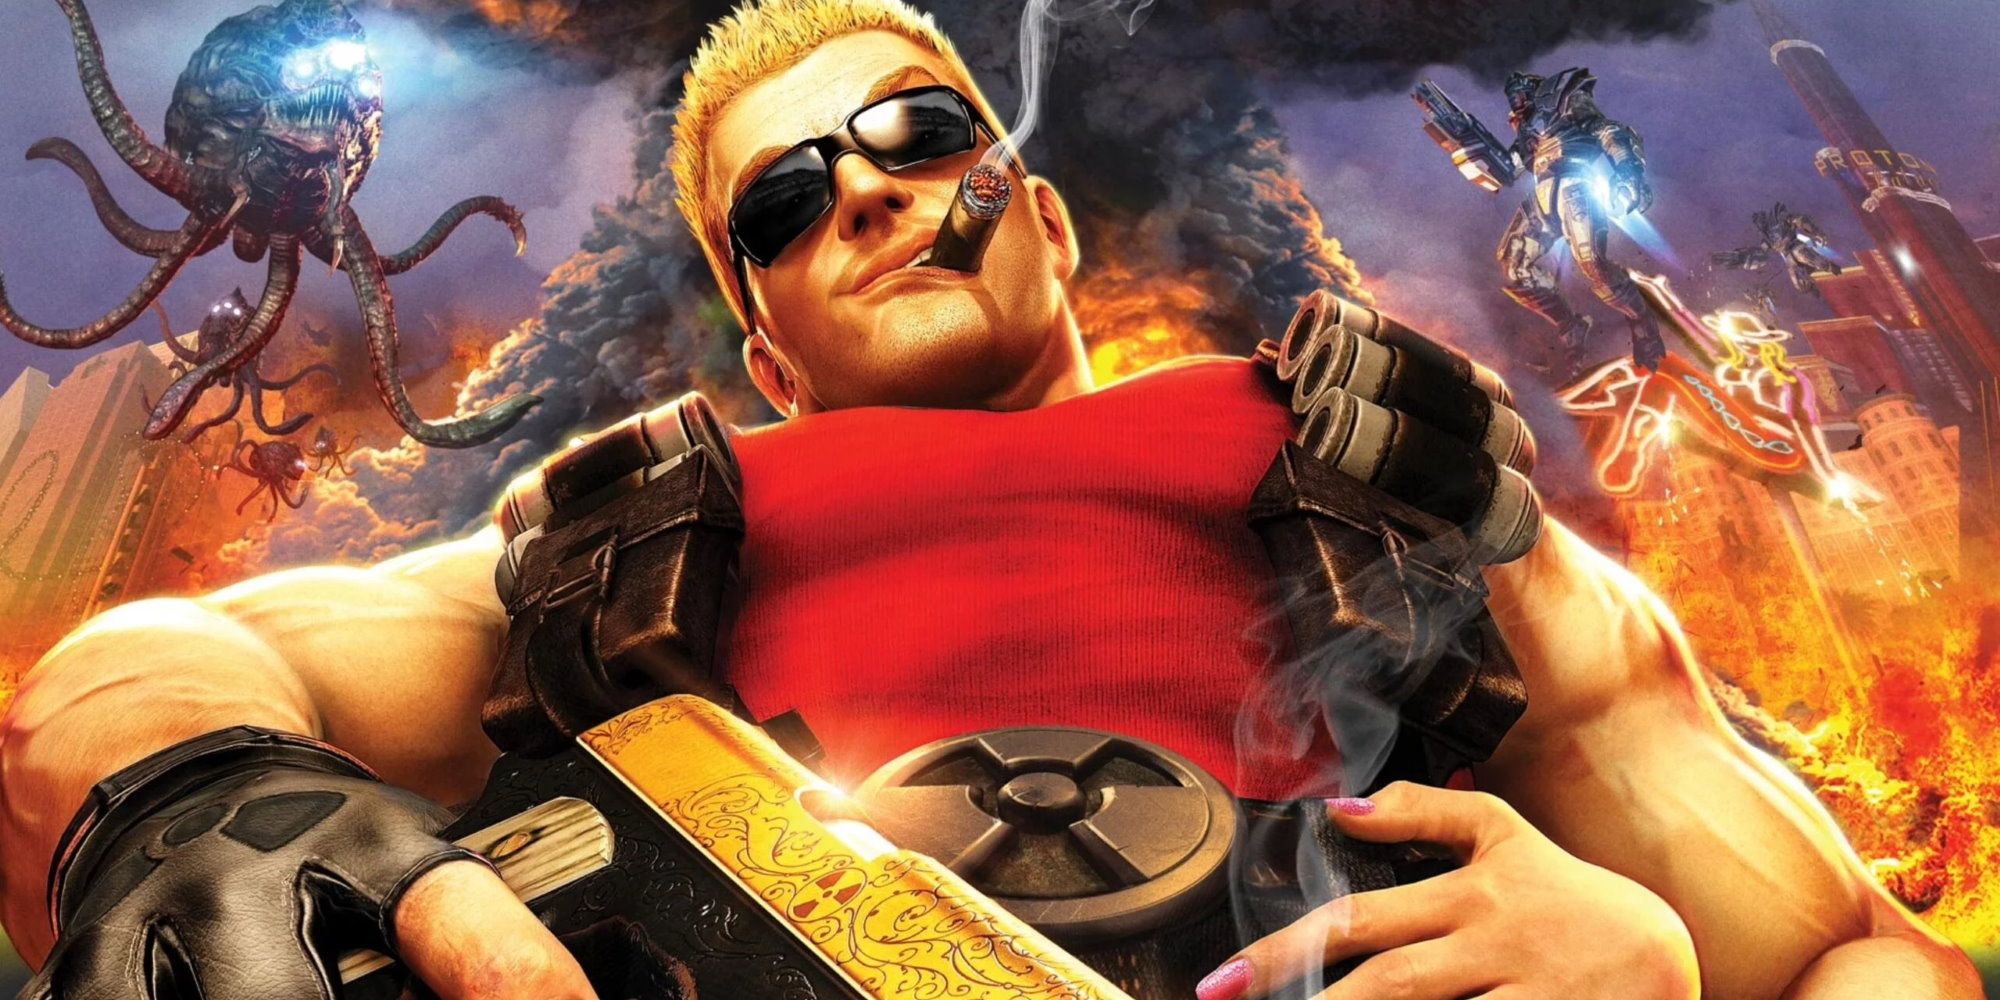 Duke Nukem Forever - Duke Nukem Smoking Cigar While Explosions Occur In The Background